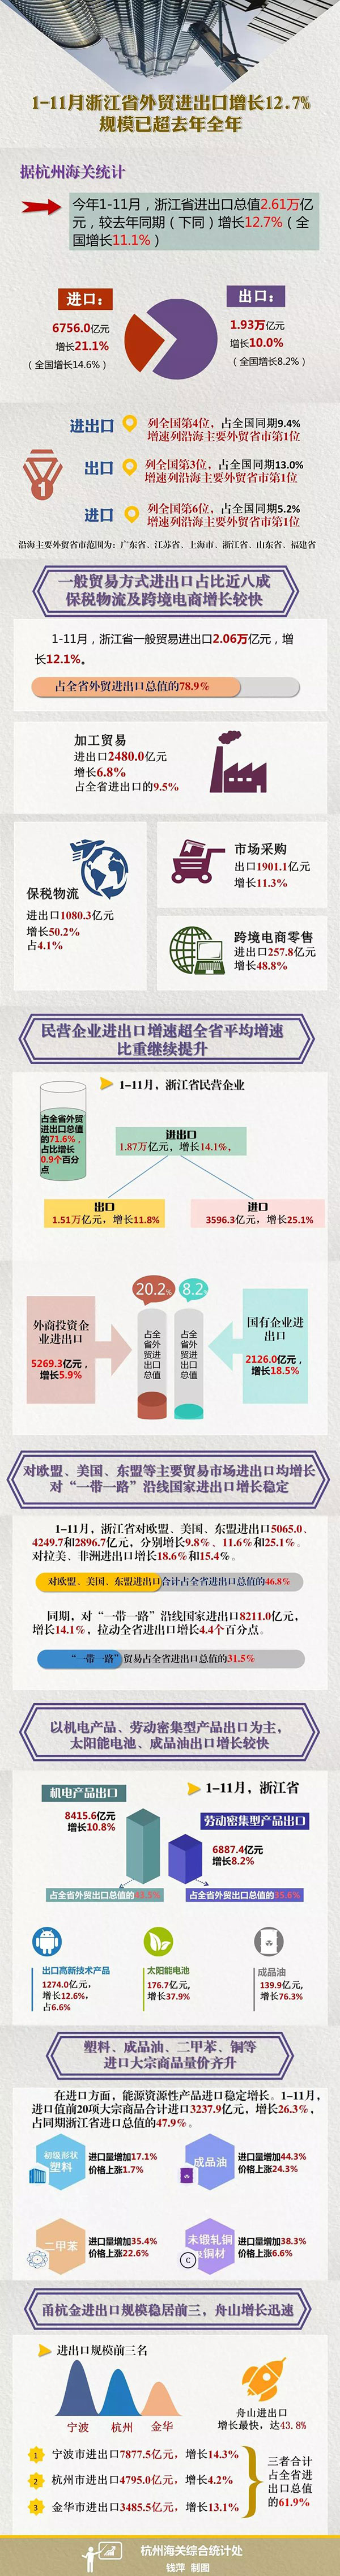 1-11月浙江省外贸进出口增长12.7%